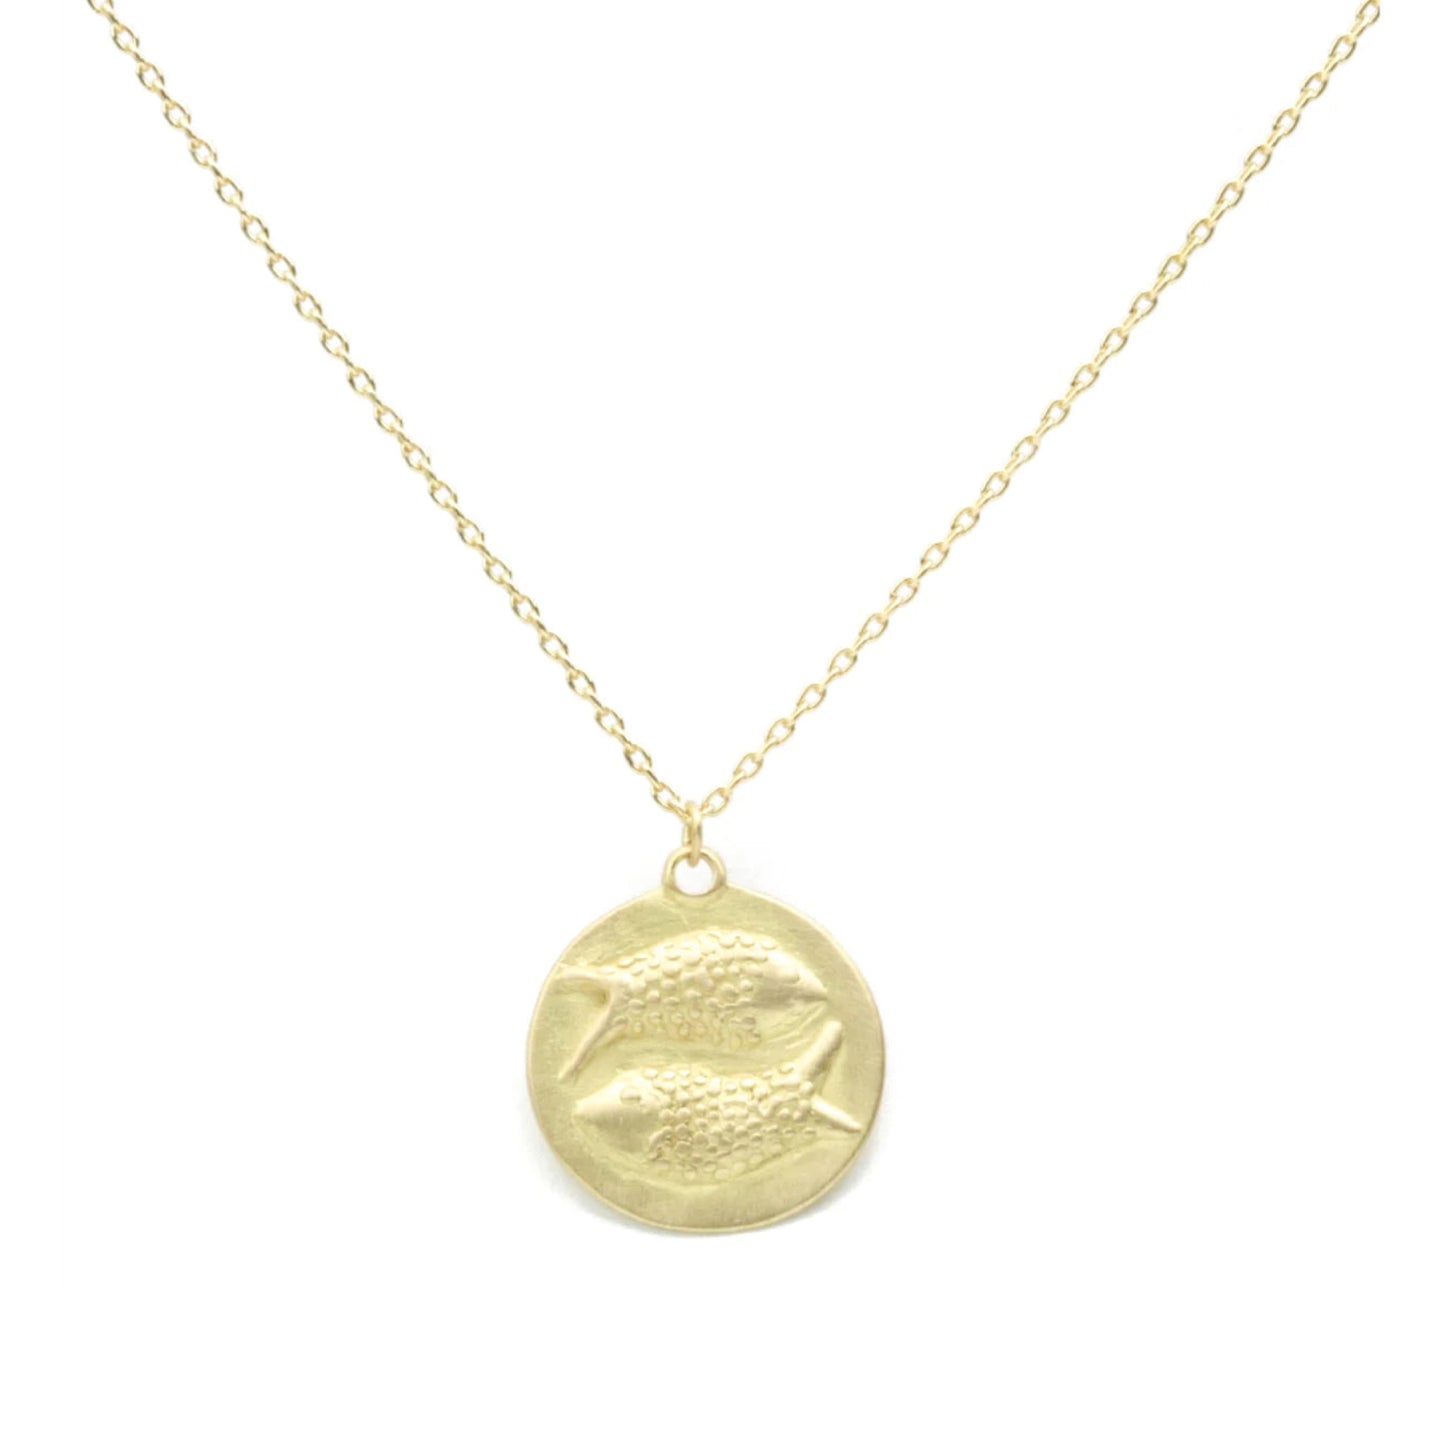 zodiac medal pendant necklace - pisces